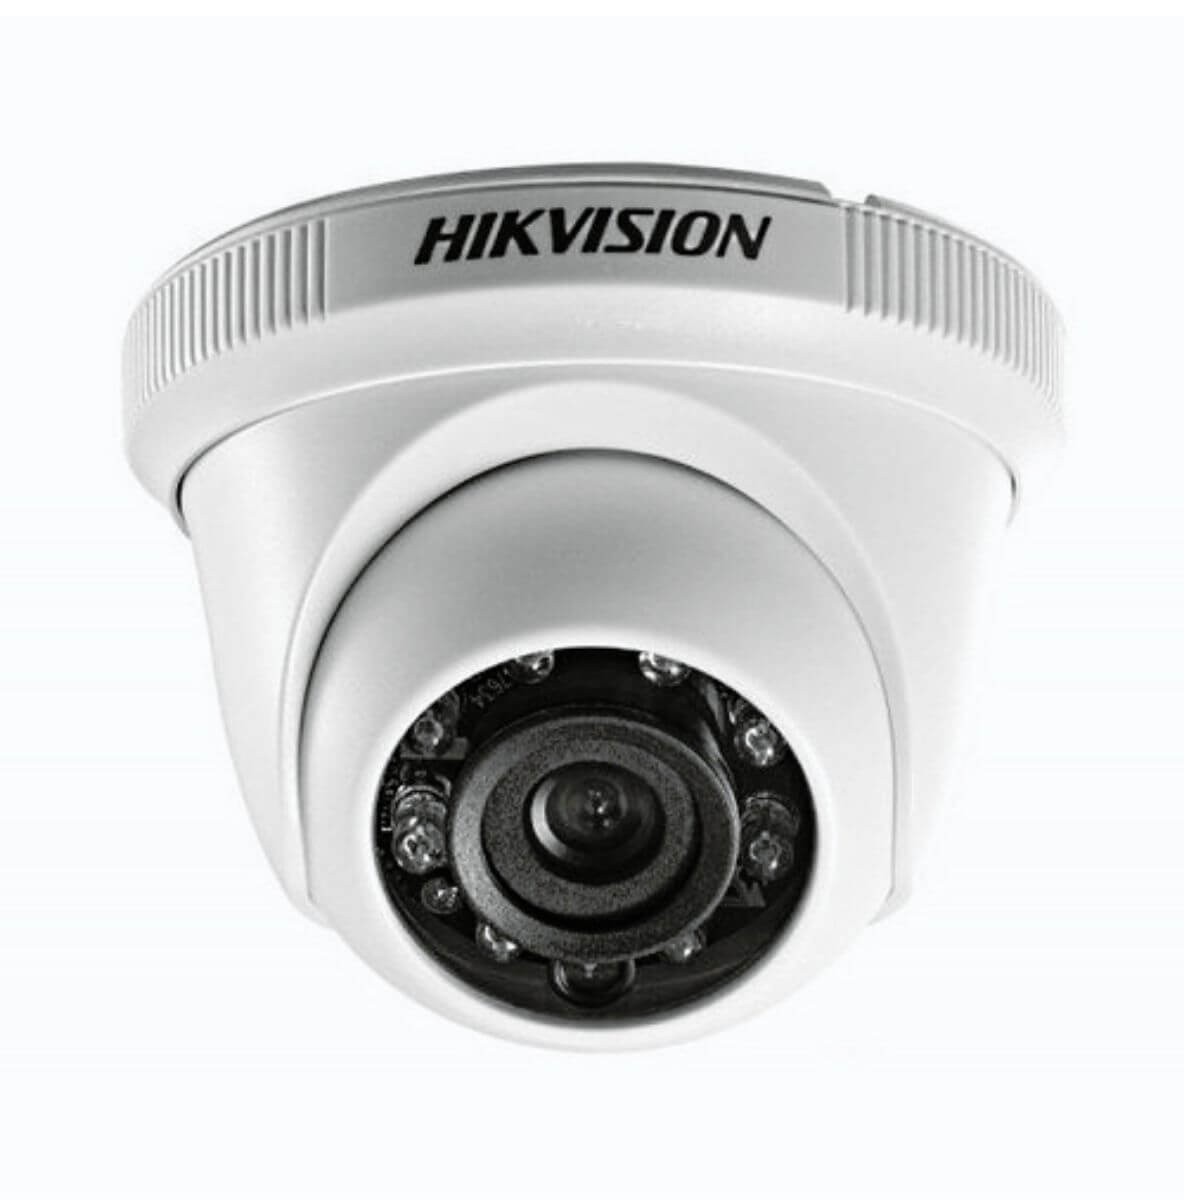 Hikvision DS-2CE56D0T- IP/ECO (2.8MM) 2MP HD 1080P...... BD